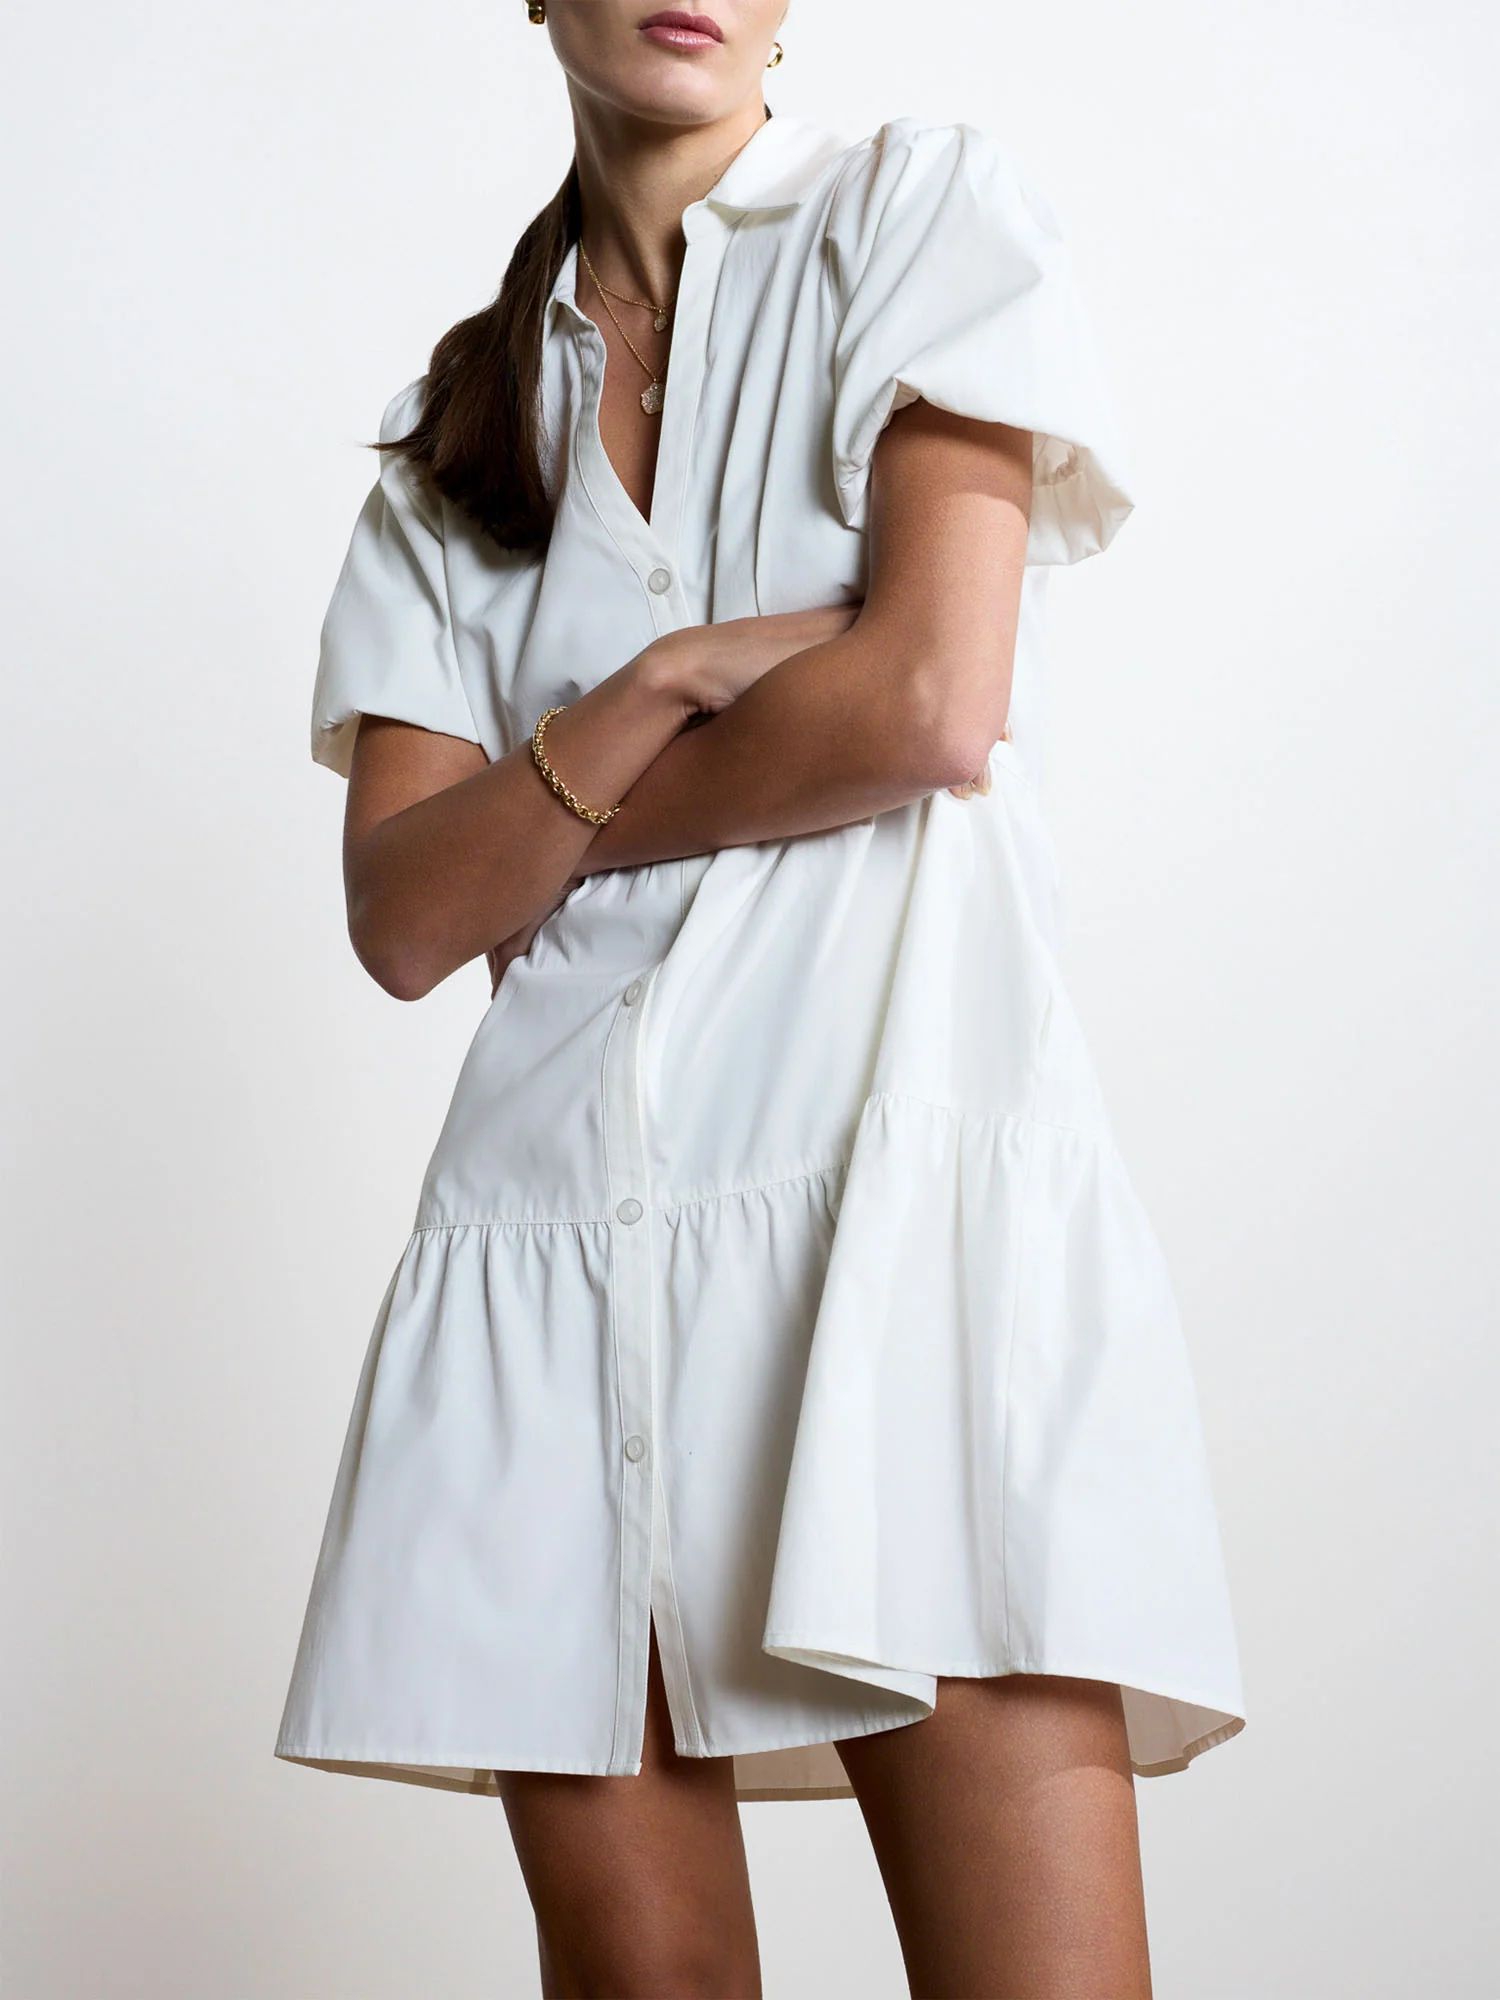 Brochu Walker | Women's Havana Mini Dress in Ivory | Brochu Walker